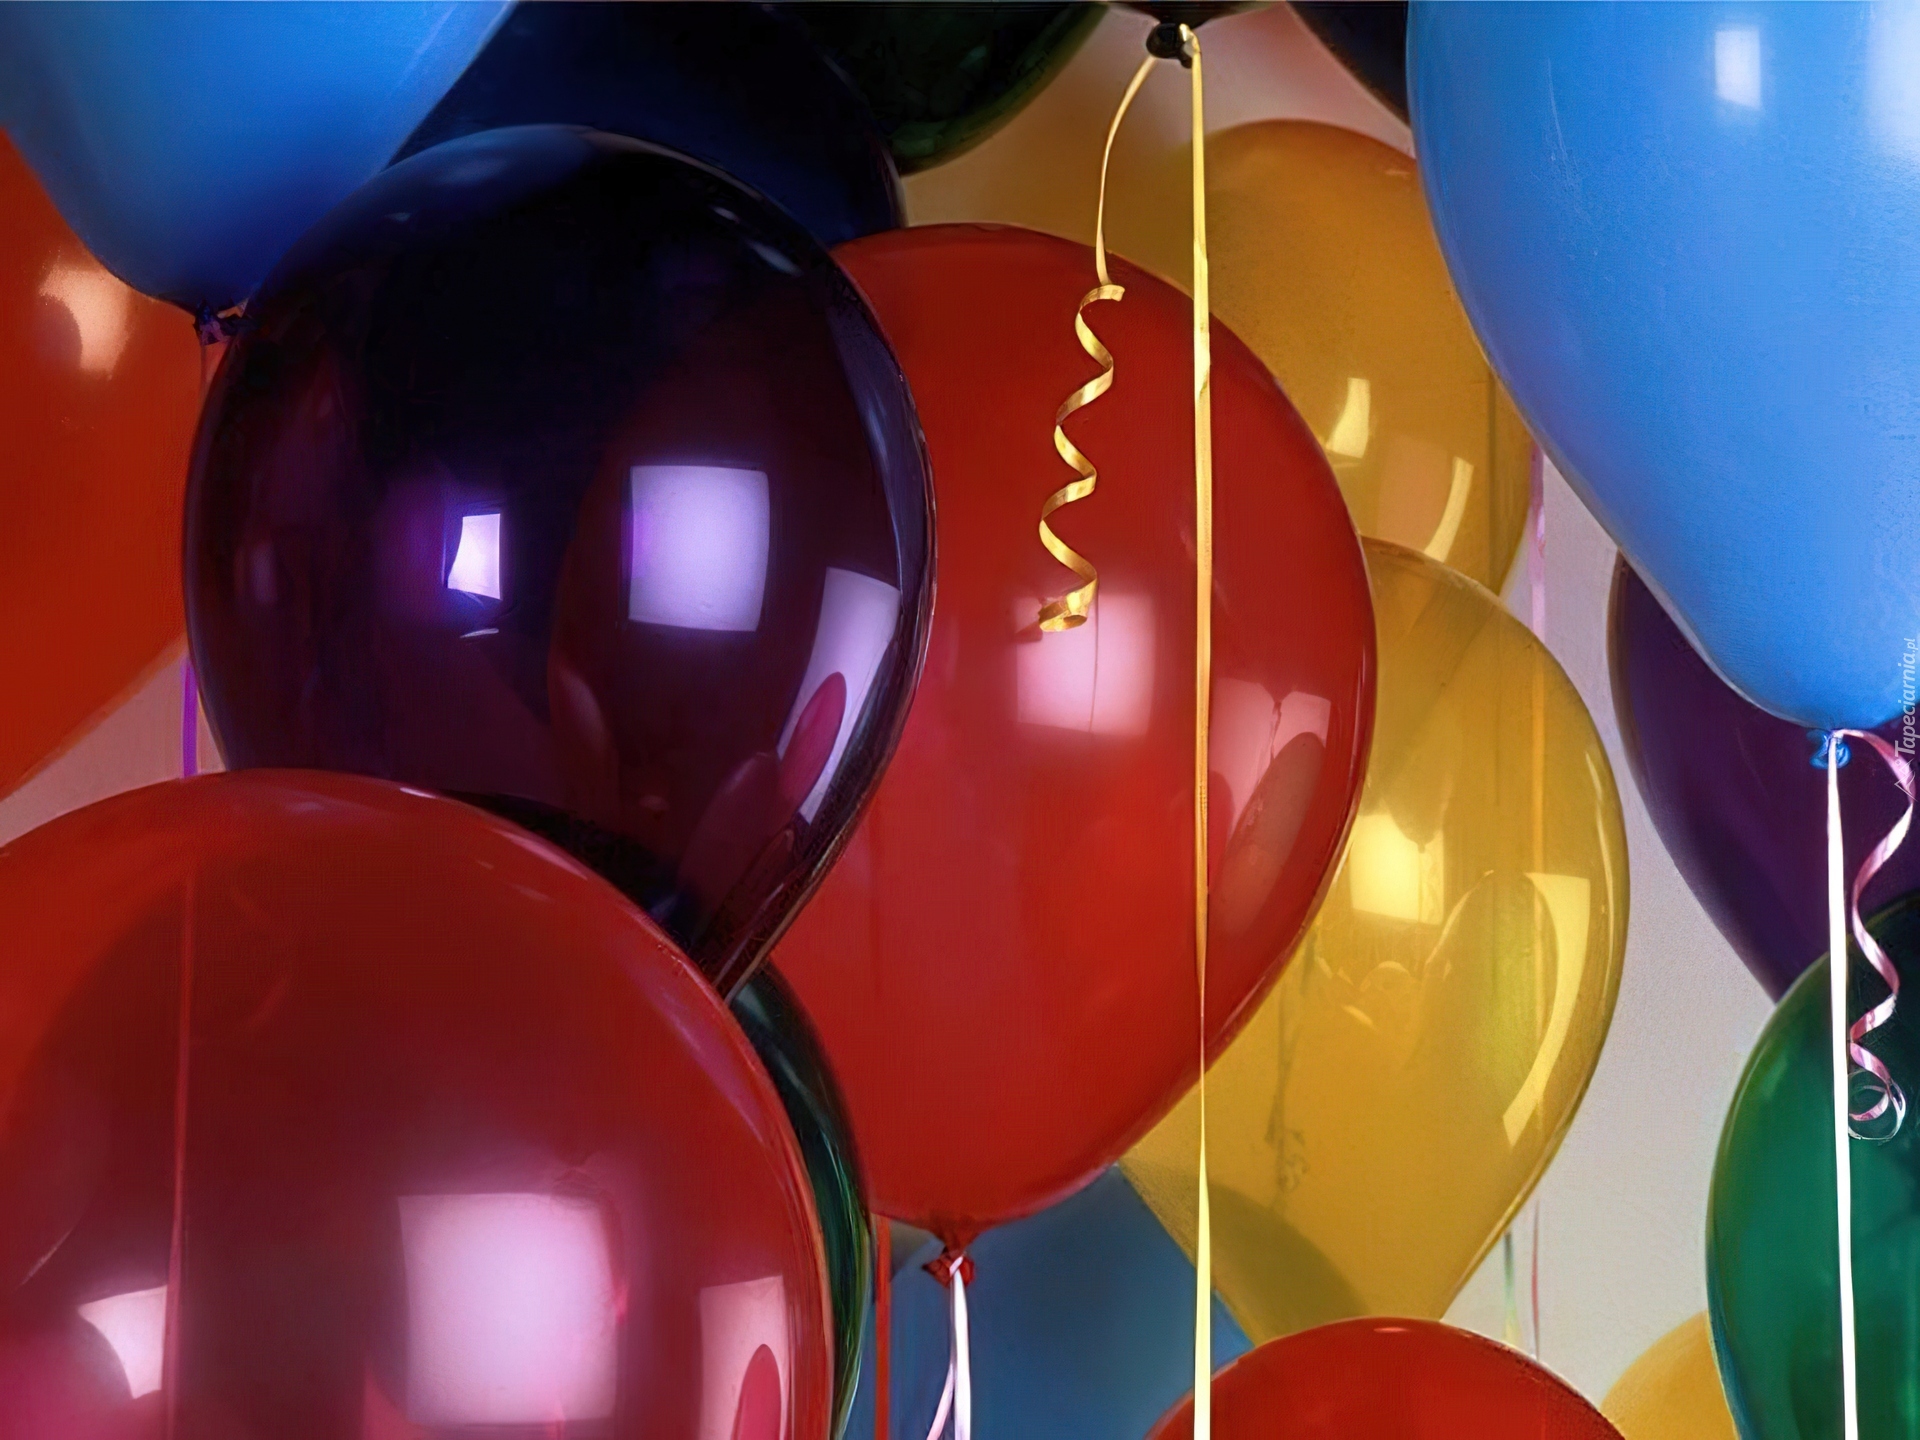 Открытка с днем рождения мужчине с шарами